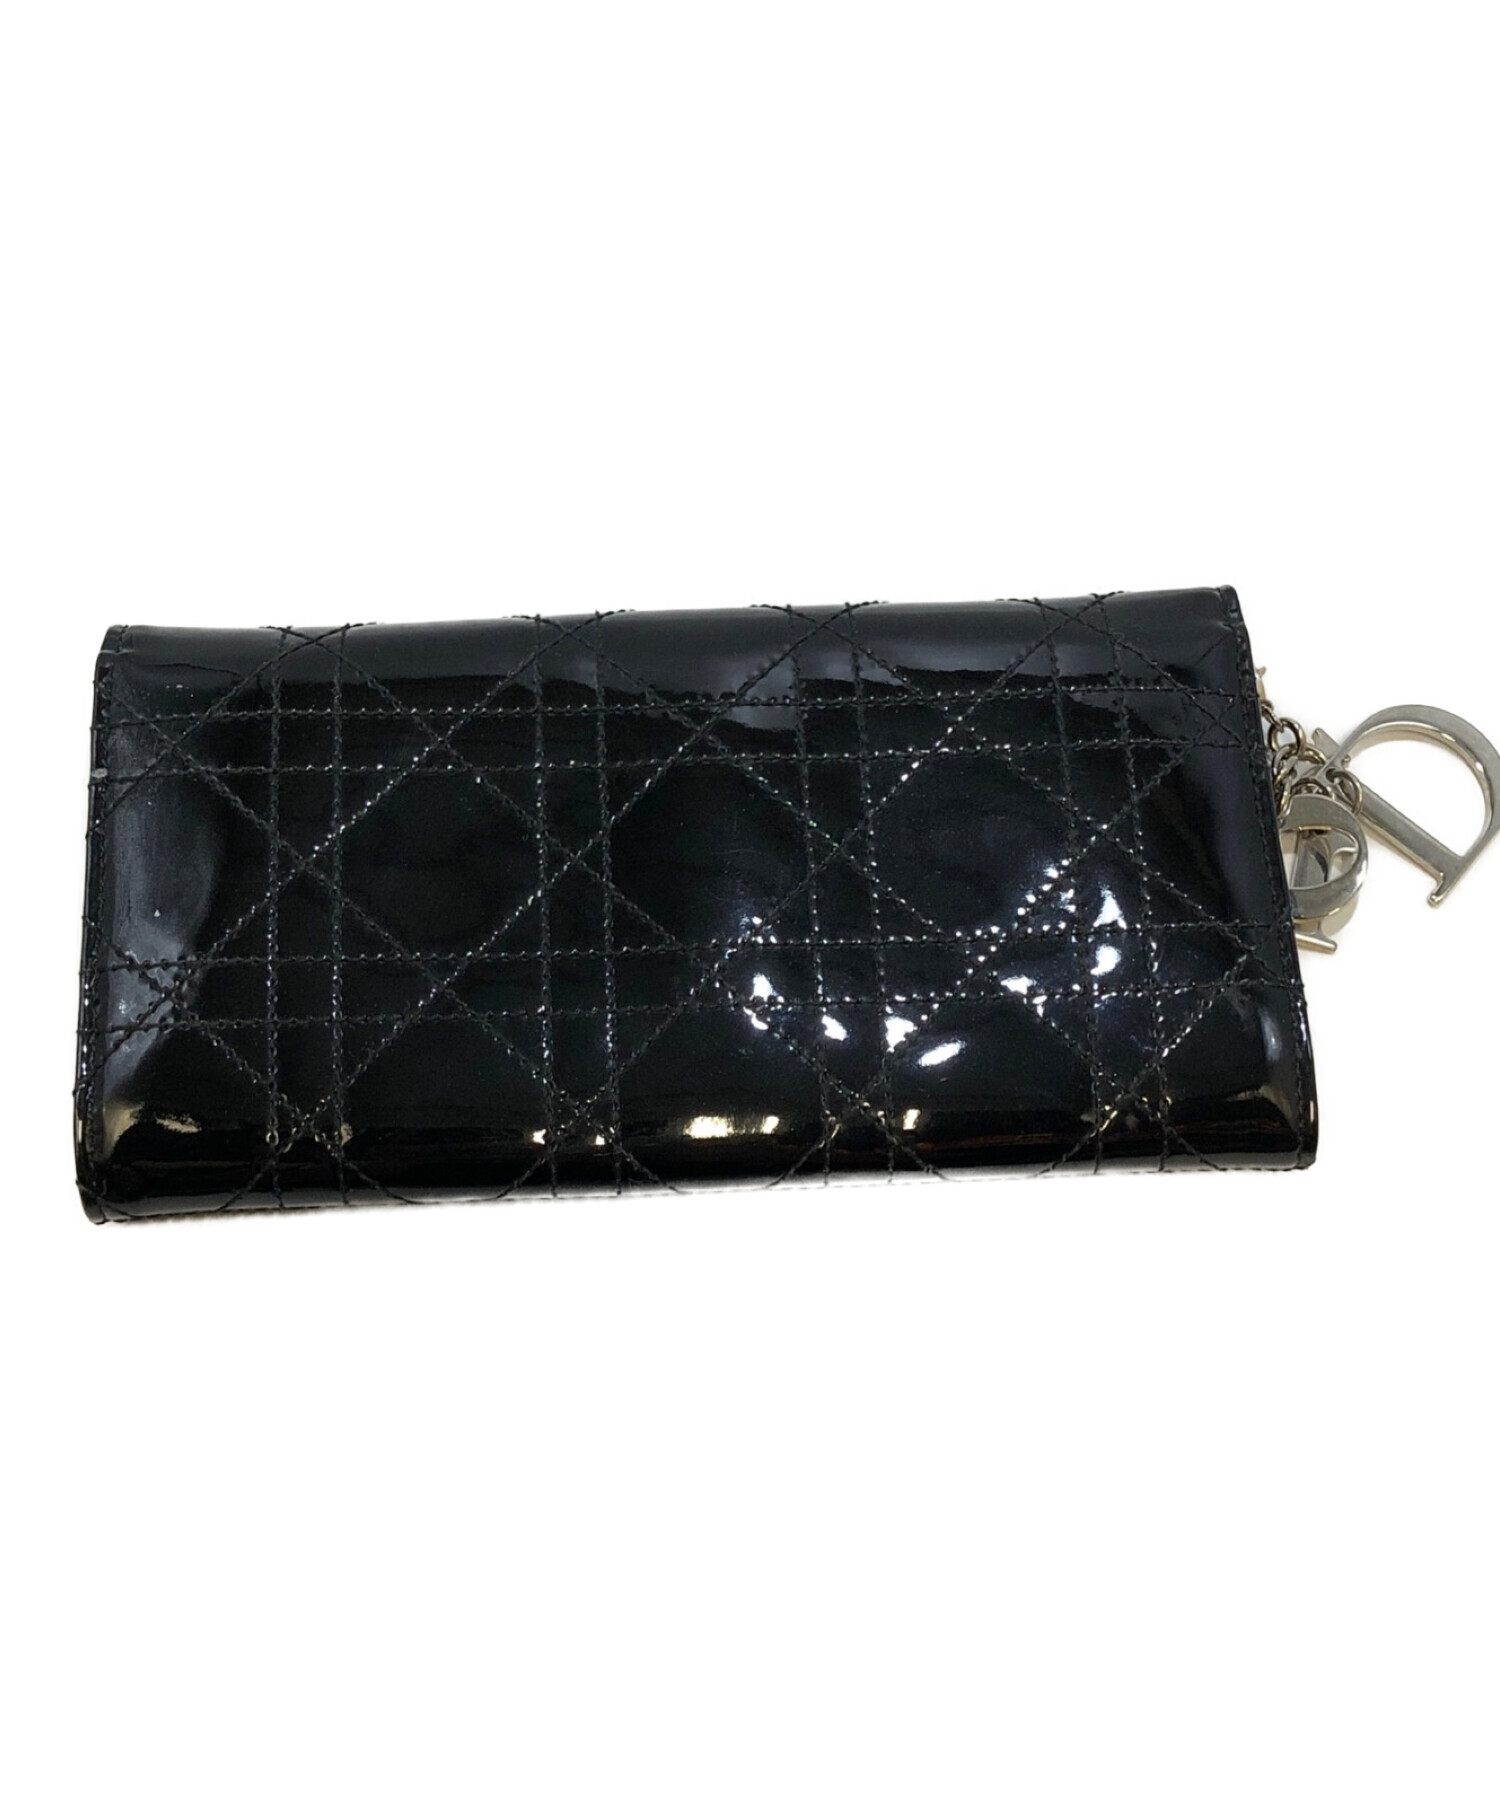 Christian Dior (クリスチャン ディオール) カナージュエナメル二つ折り財布 ブラック